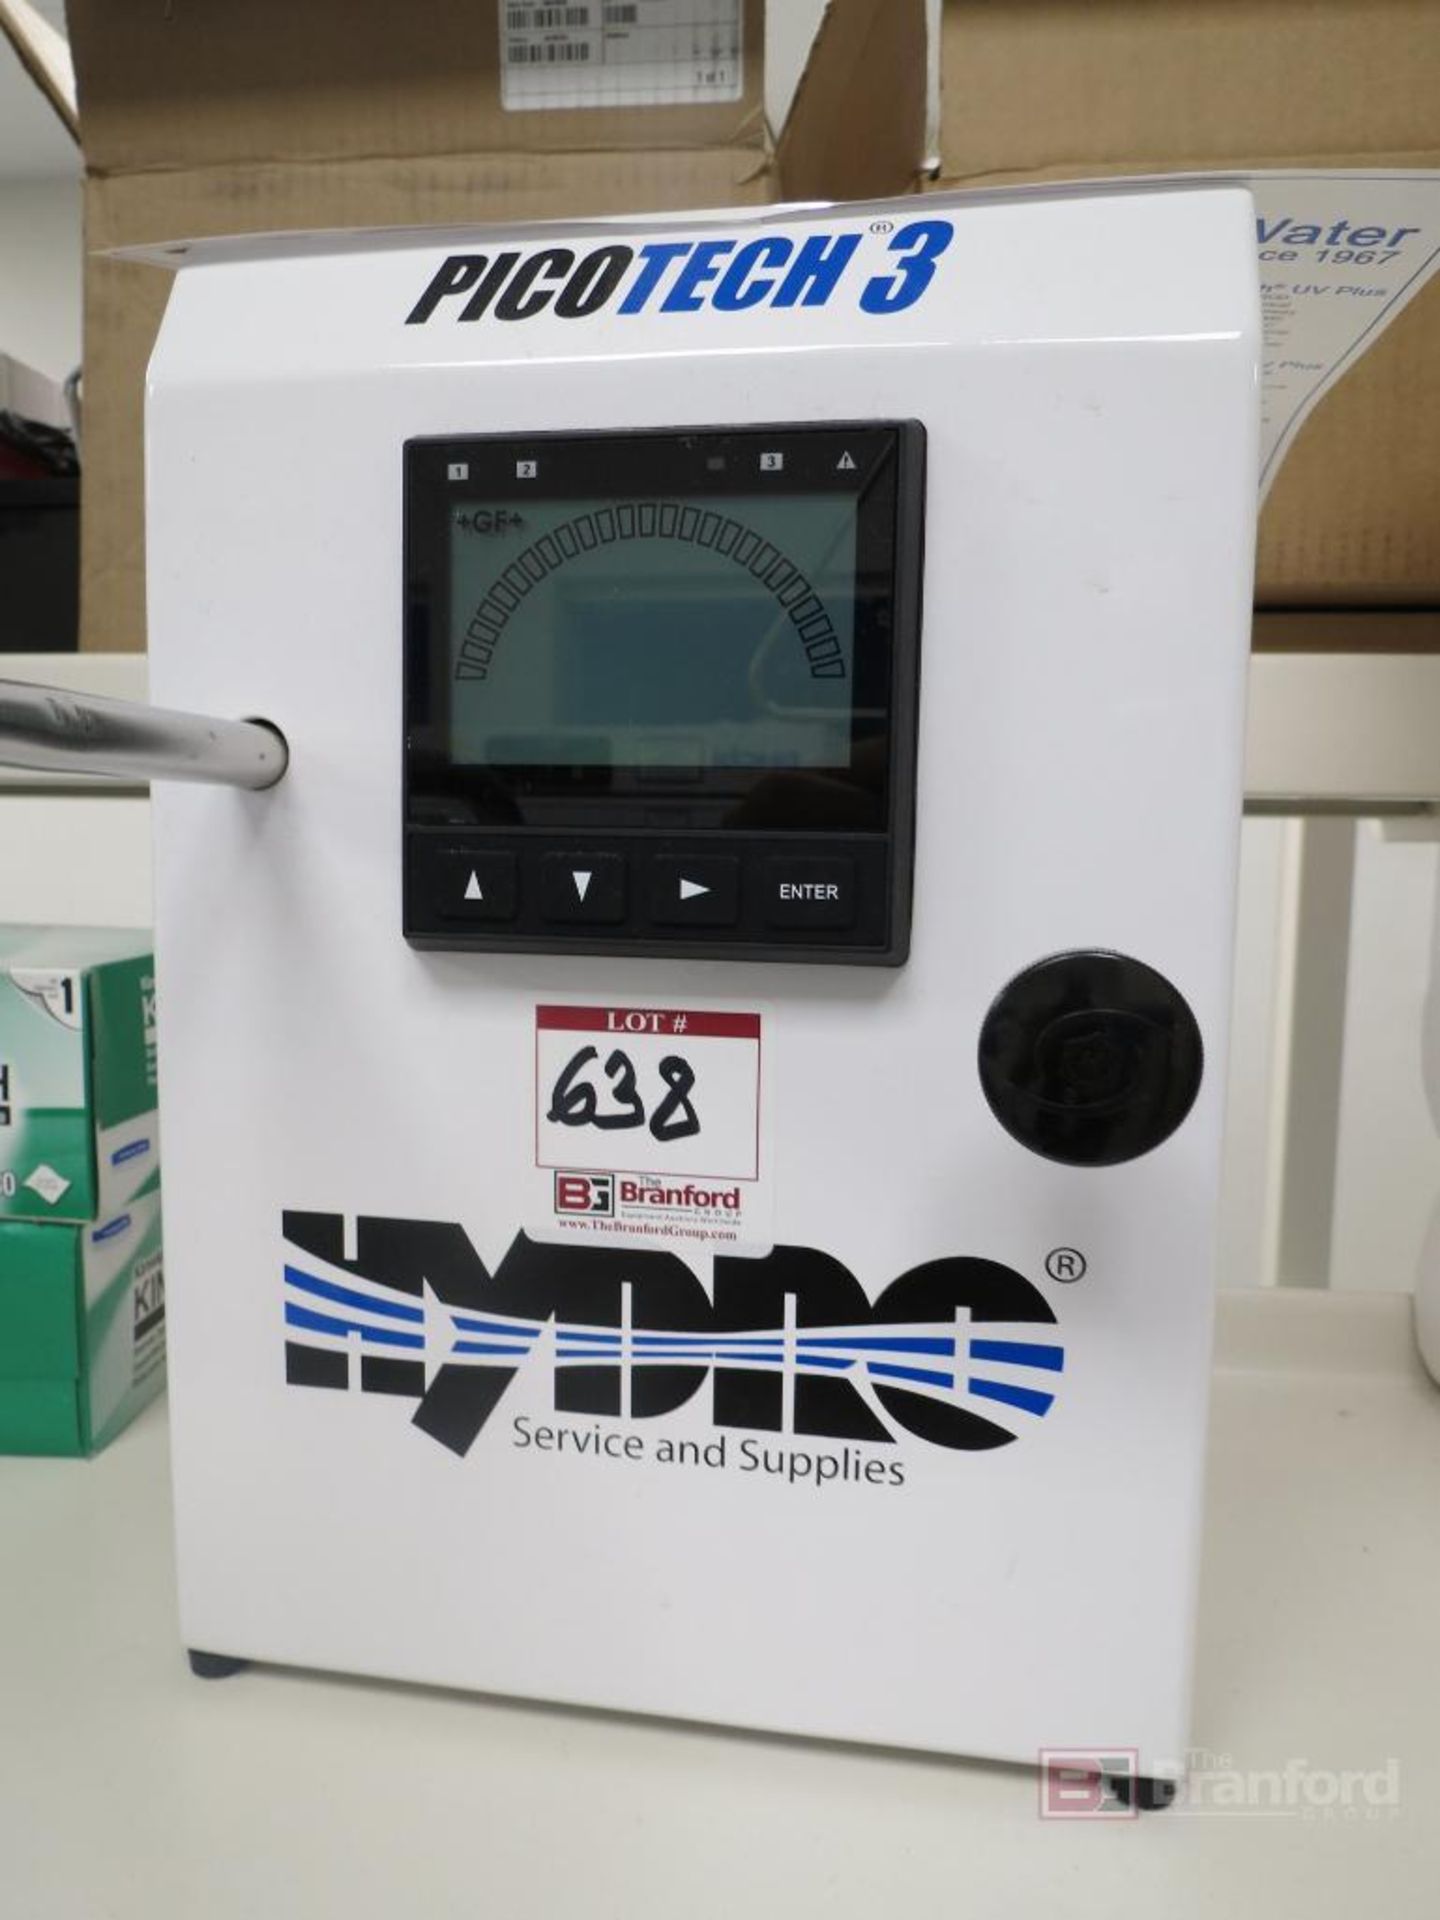 Hydro PicoTech 3 Water Purification System w/ Pump